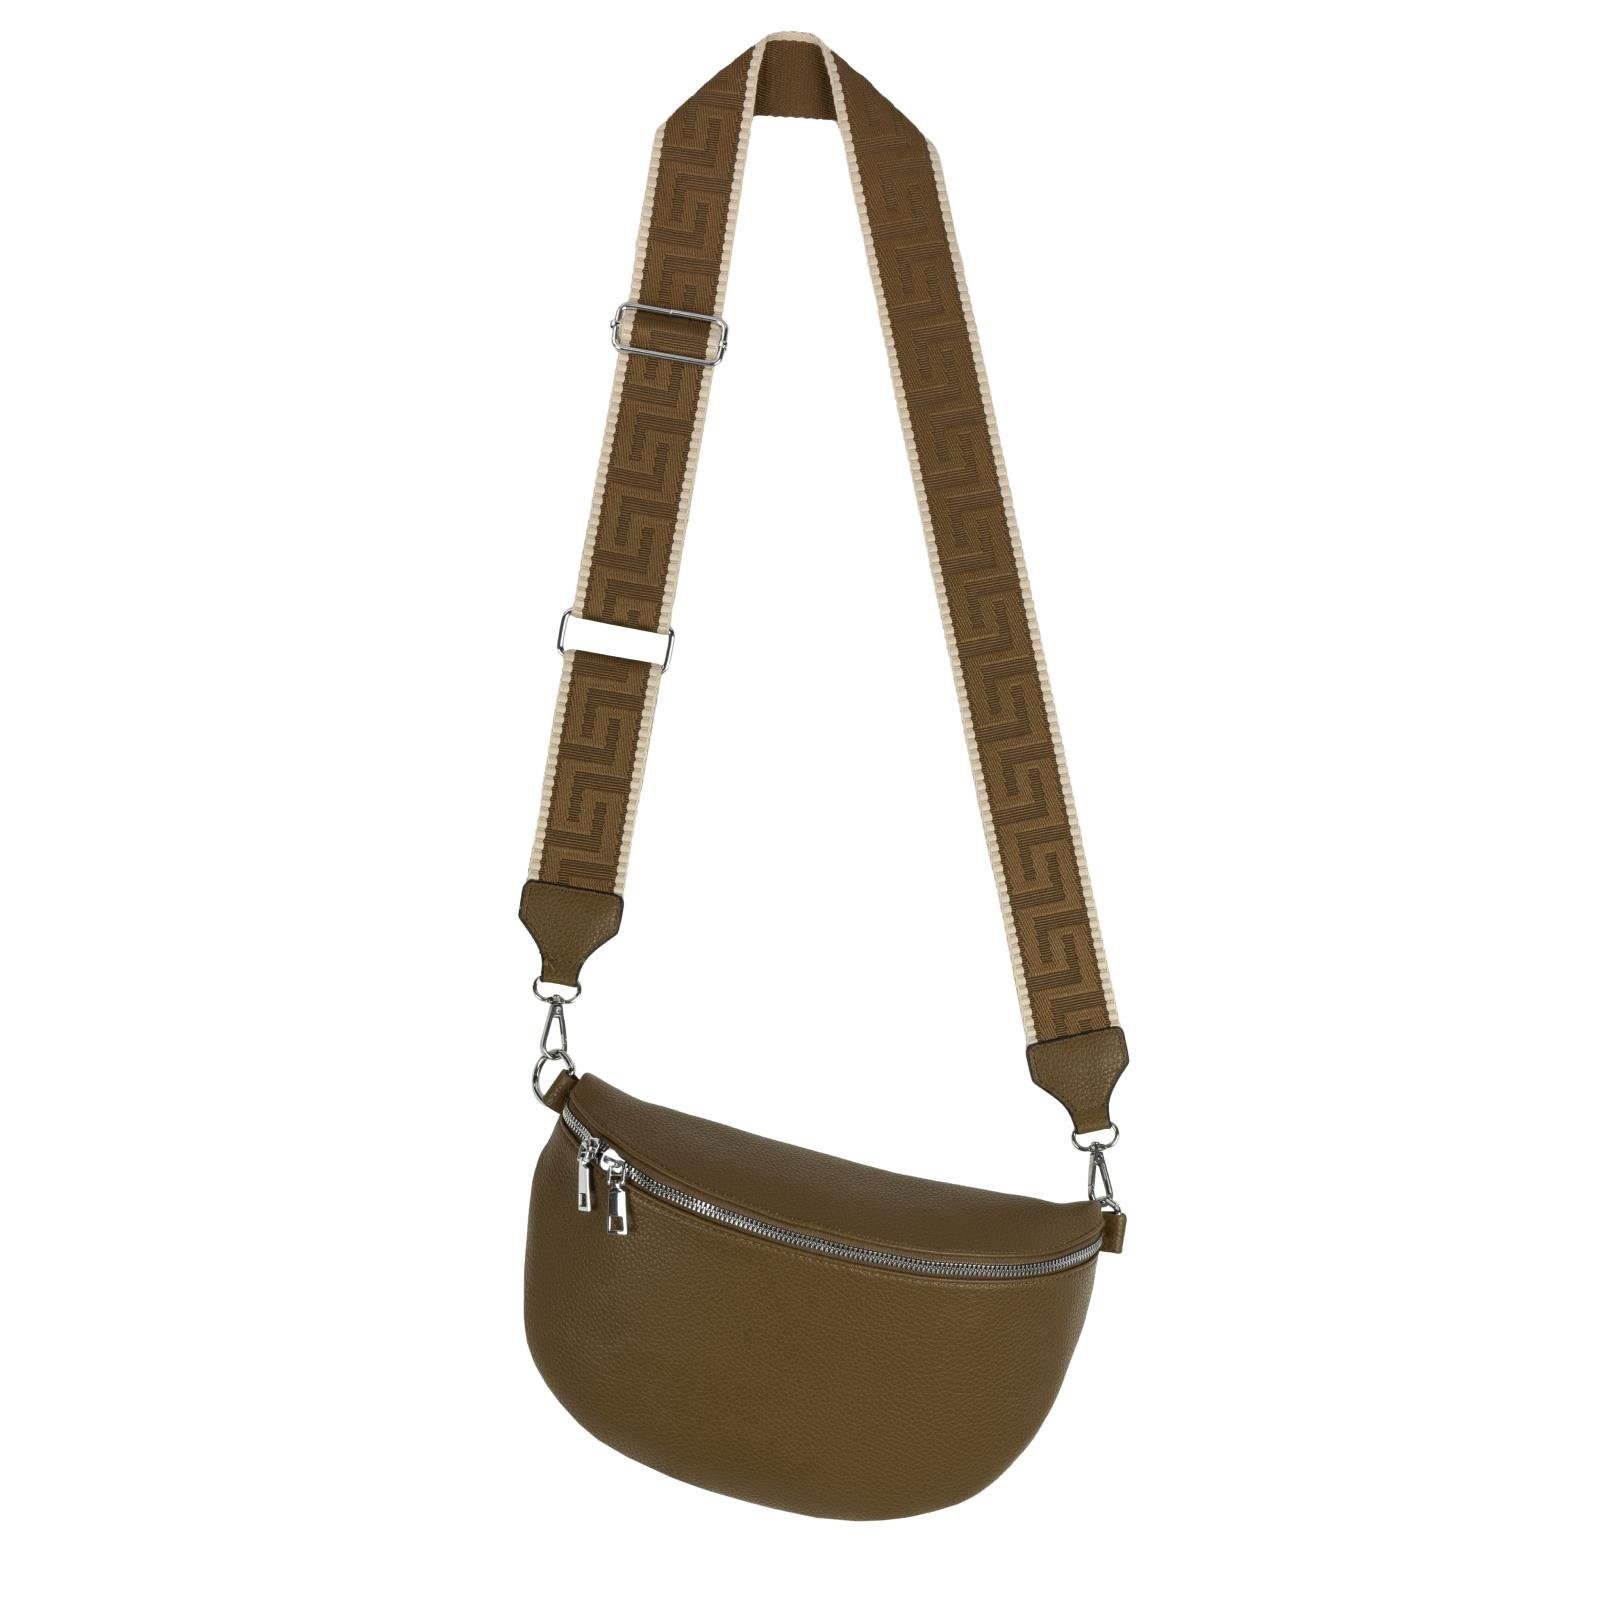 EAAKIE Gürteltasche Bauchtasche XL Umhängetasche Crossbody-Bag Hüfttasche Kunstleder Italy, als Schultertasche, CrossOver, Umhängetasche tragbar OLIVE